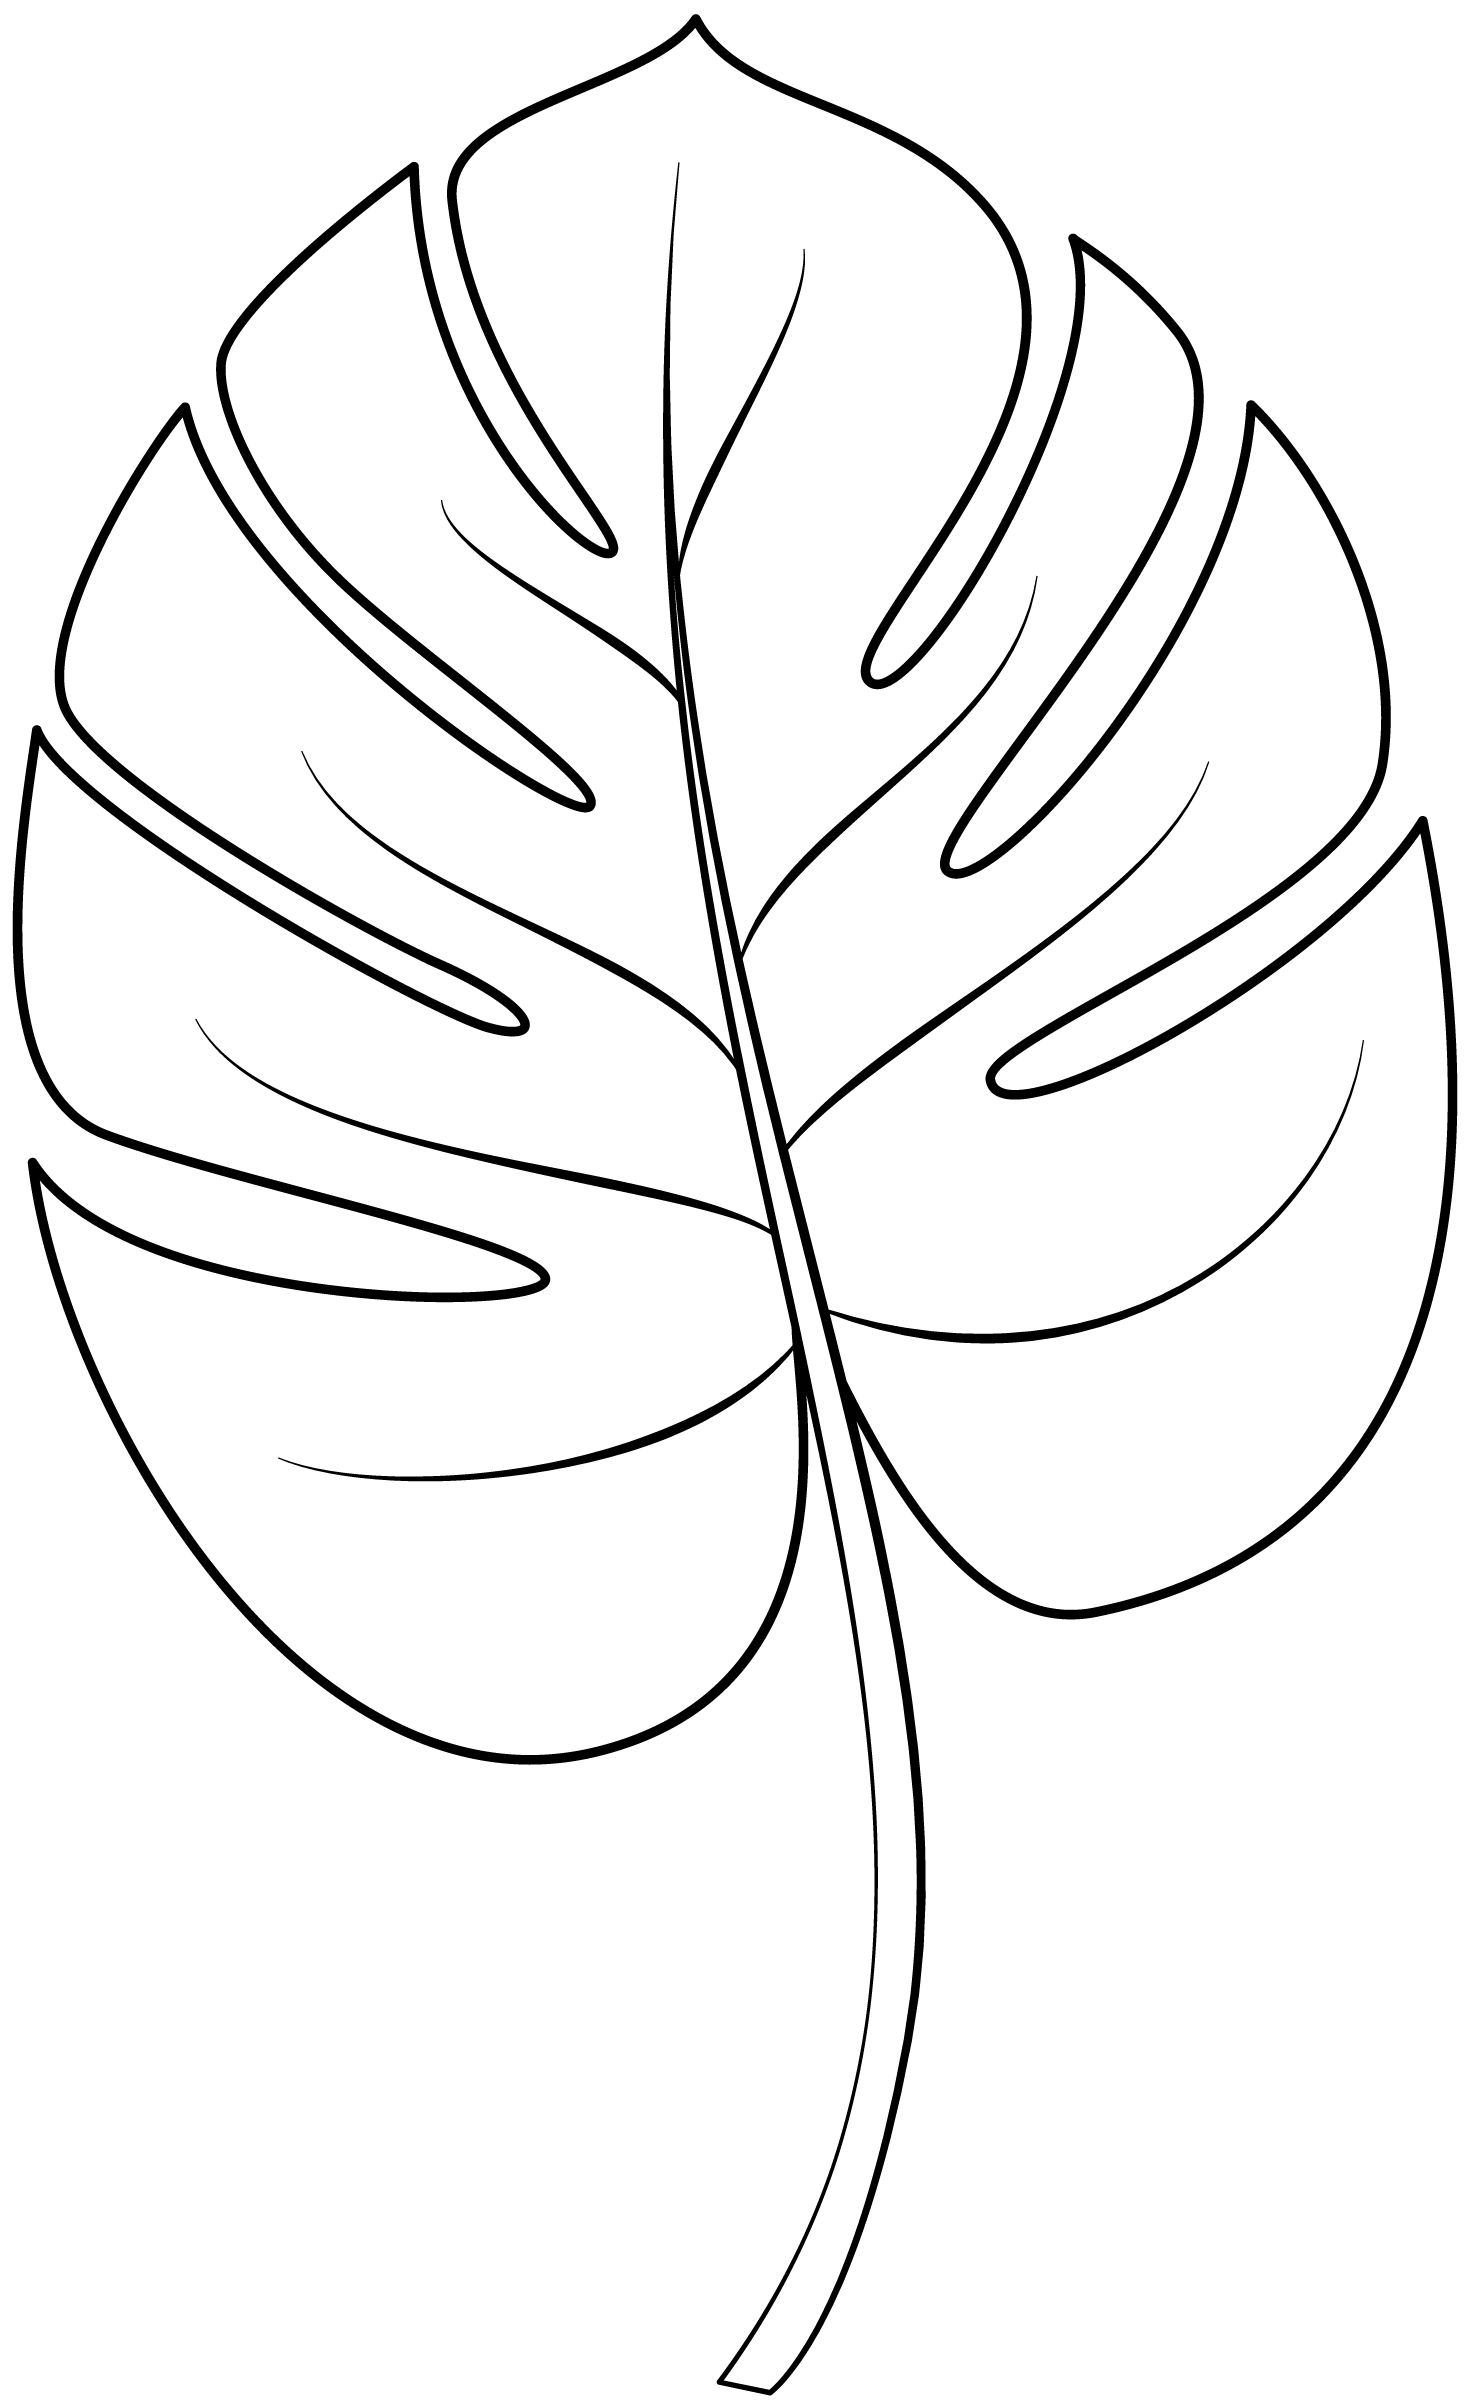 Plantilla imprimible de hojas tropicales | Manualidades de papel para niños